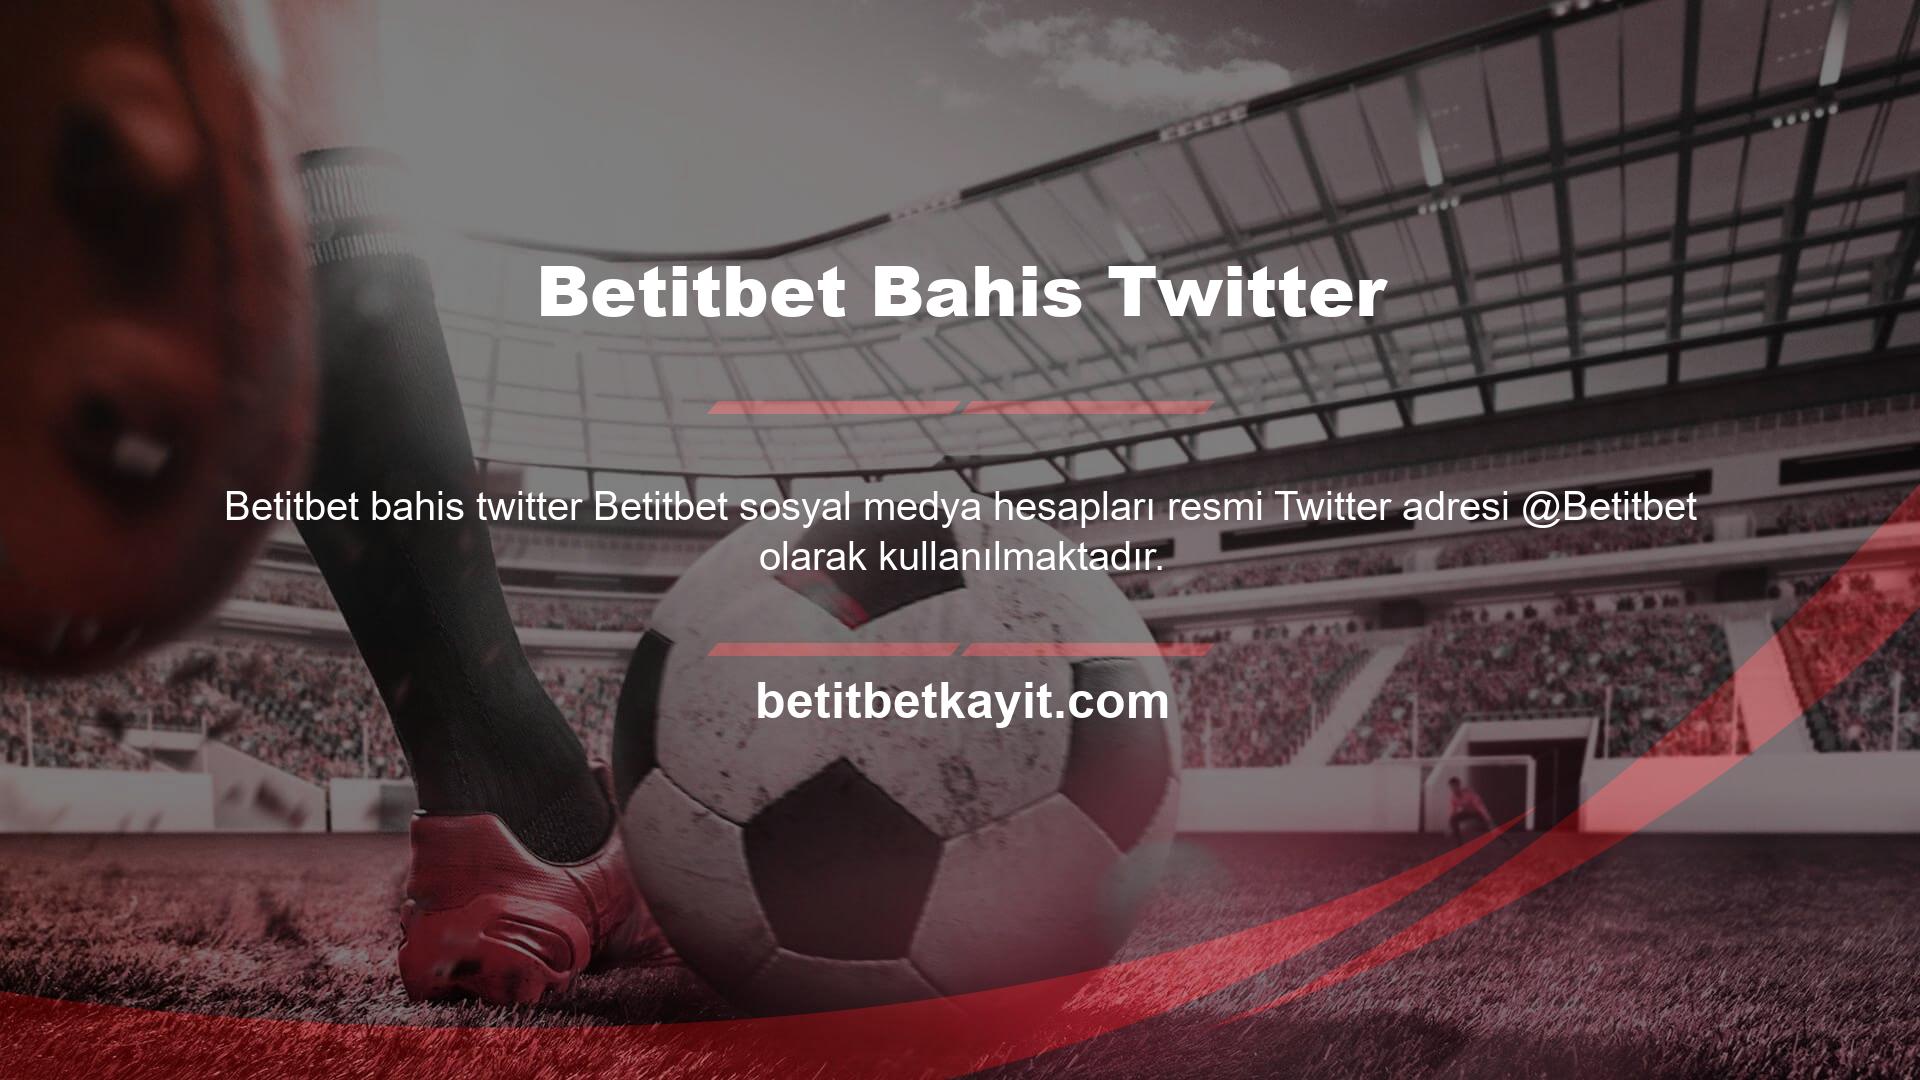 Betitbet Bahis Twitter giriş adresini ziyaret ederek kolayca bir Betitbet Bahis üyelik kaydı oluşturabilirsiniz